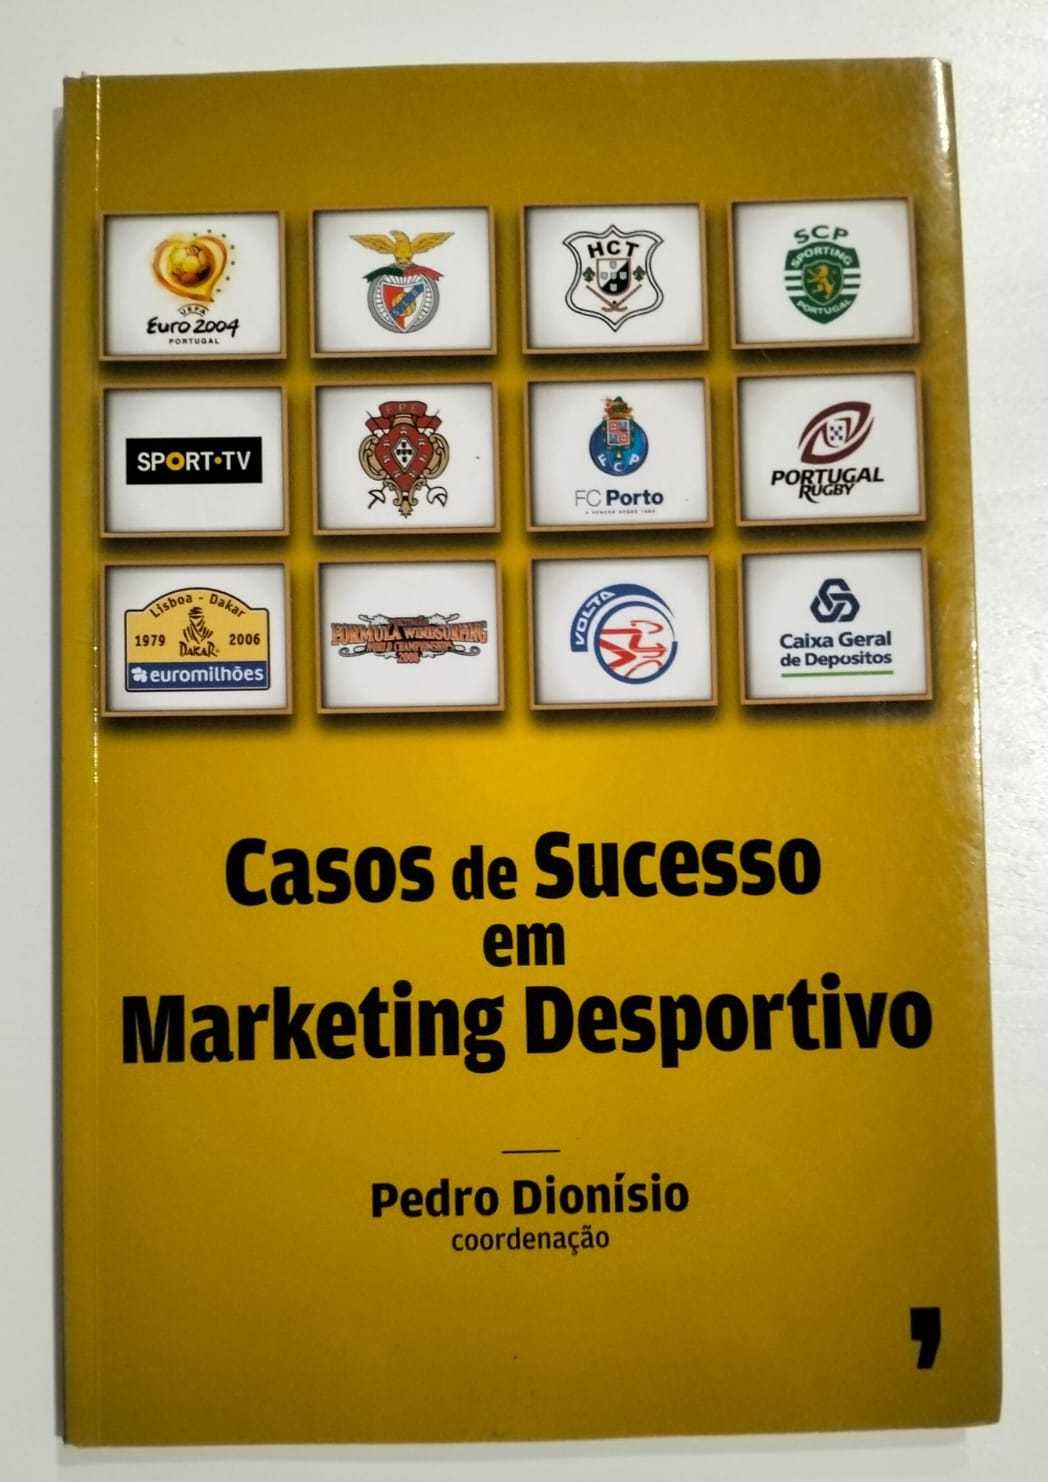 Livro "Casos de Sucesso em Marketing Desportivo" - Pedro Dionísio